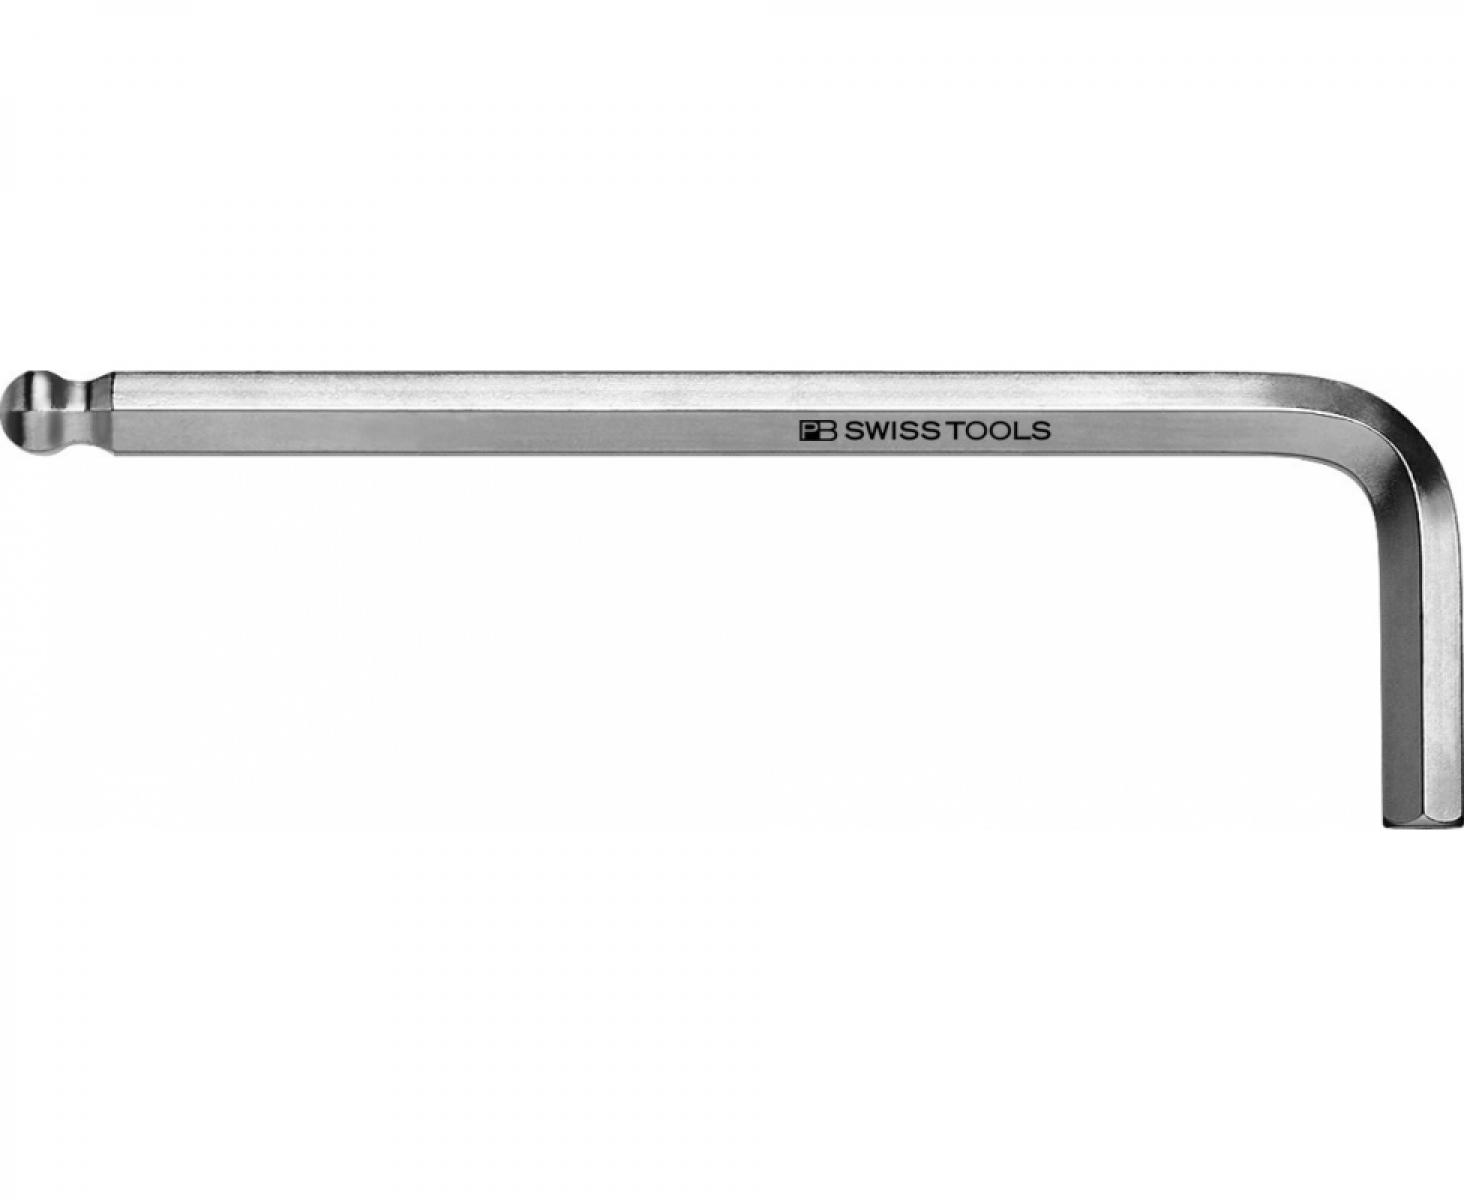 Ключ штифтовый HEX PB Swiss Tools PB 212Z.9/64 со сферической головкой дюймовый